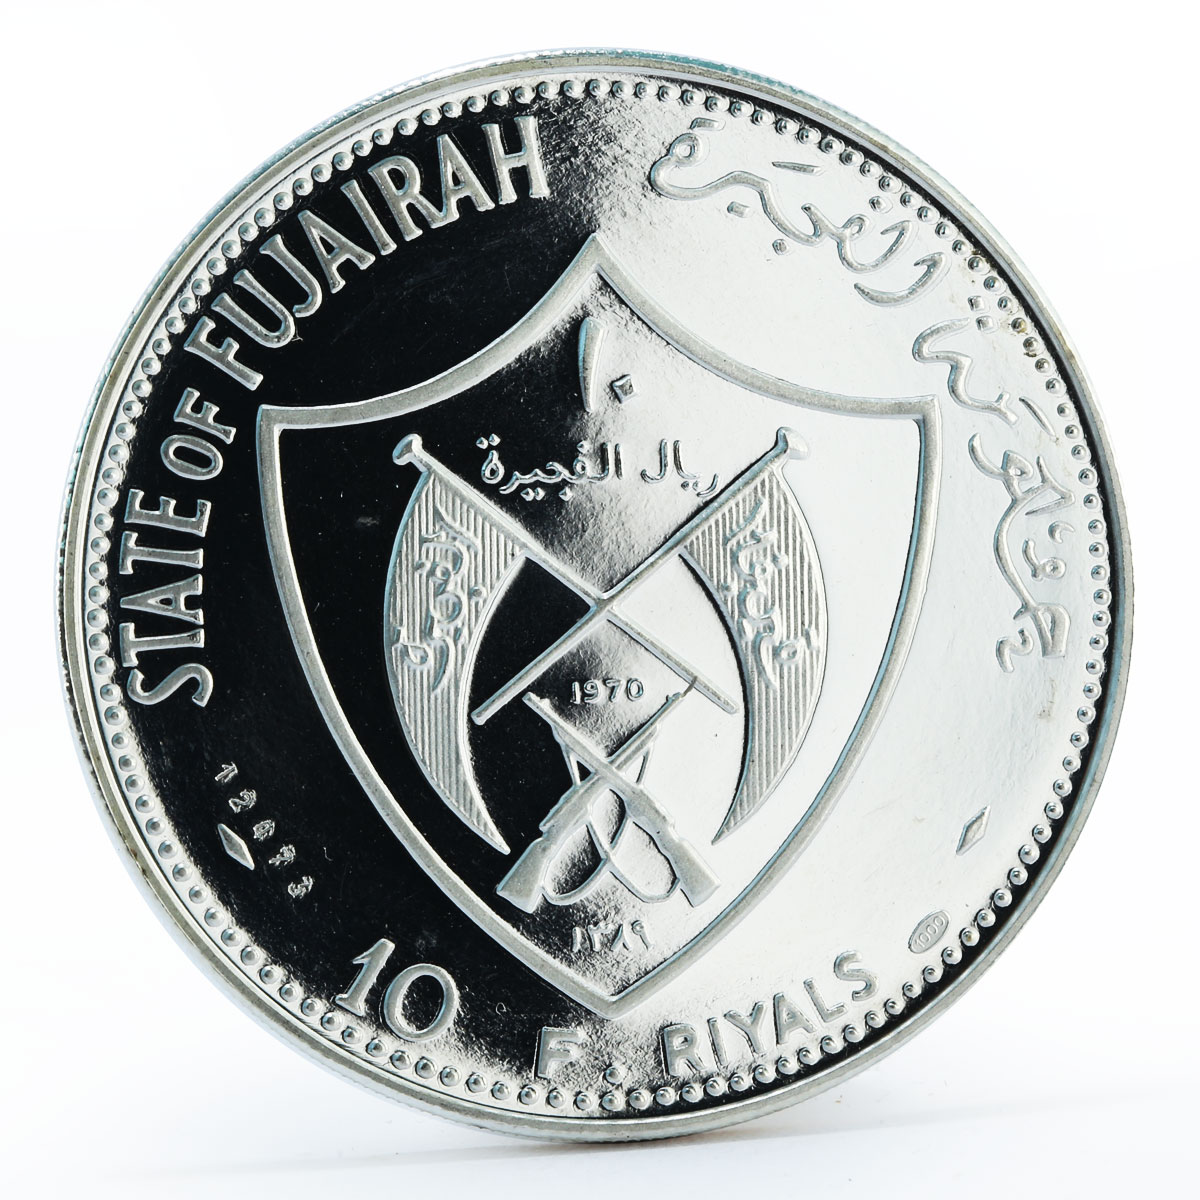 Fujairah 10 riyals Pilgrim in Australia proof silver coin 1970